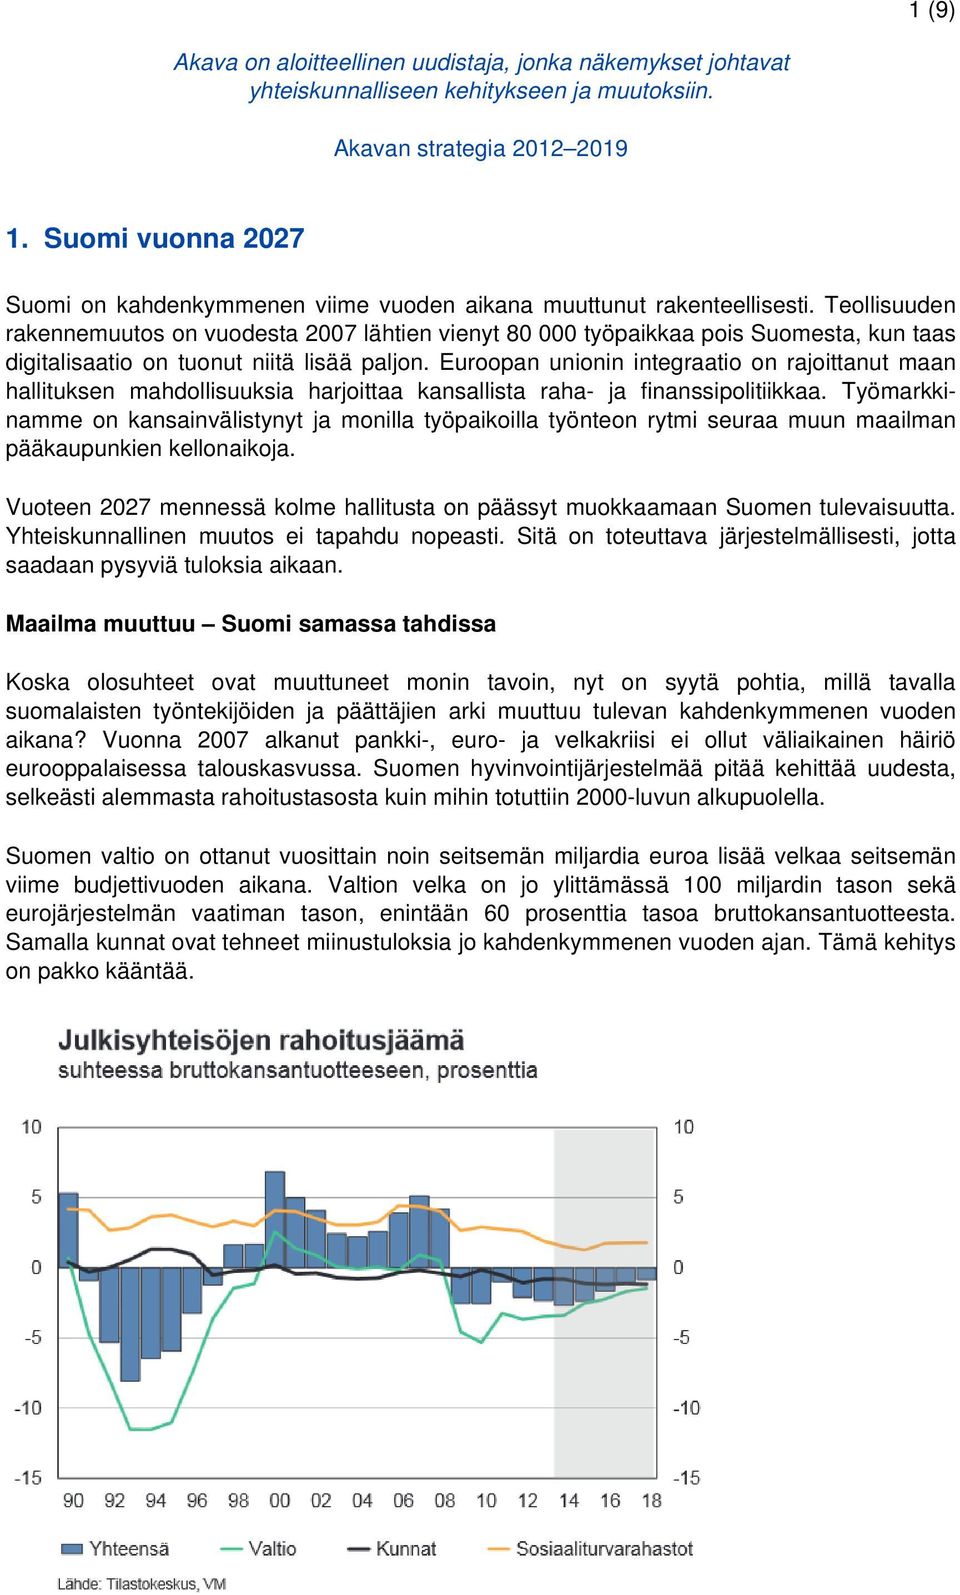 Teollisuuden rakennemuutos on vuodesta 2007 lähtien vienyt 80 000 työpaikkaa pois Suomesta, kun taas digitalisaatio on tuonut niitä lisää paljon.